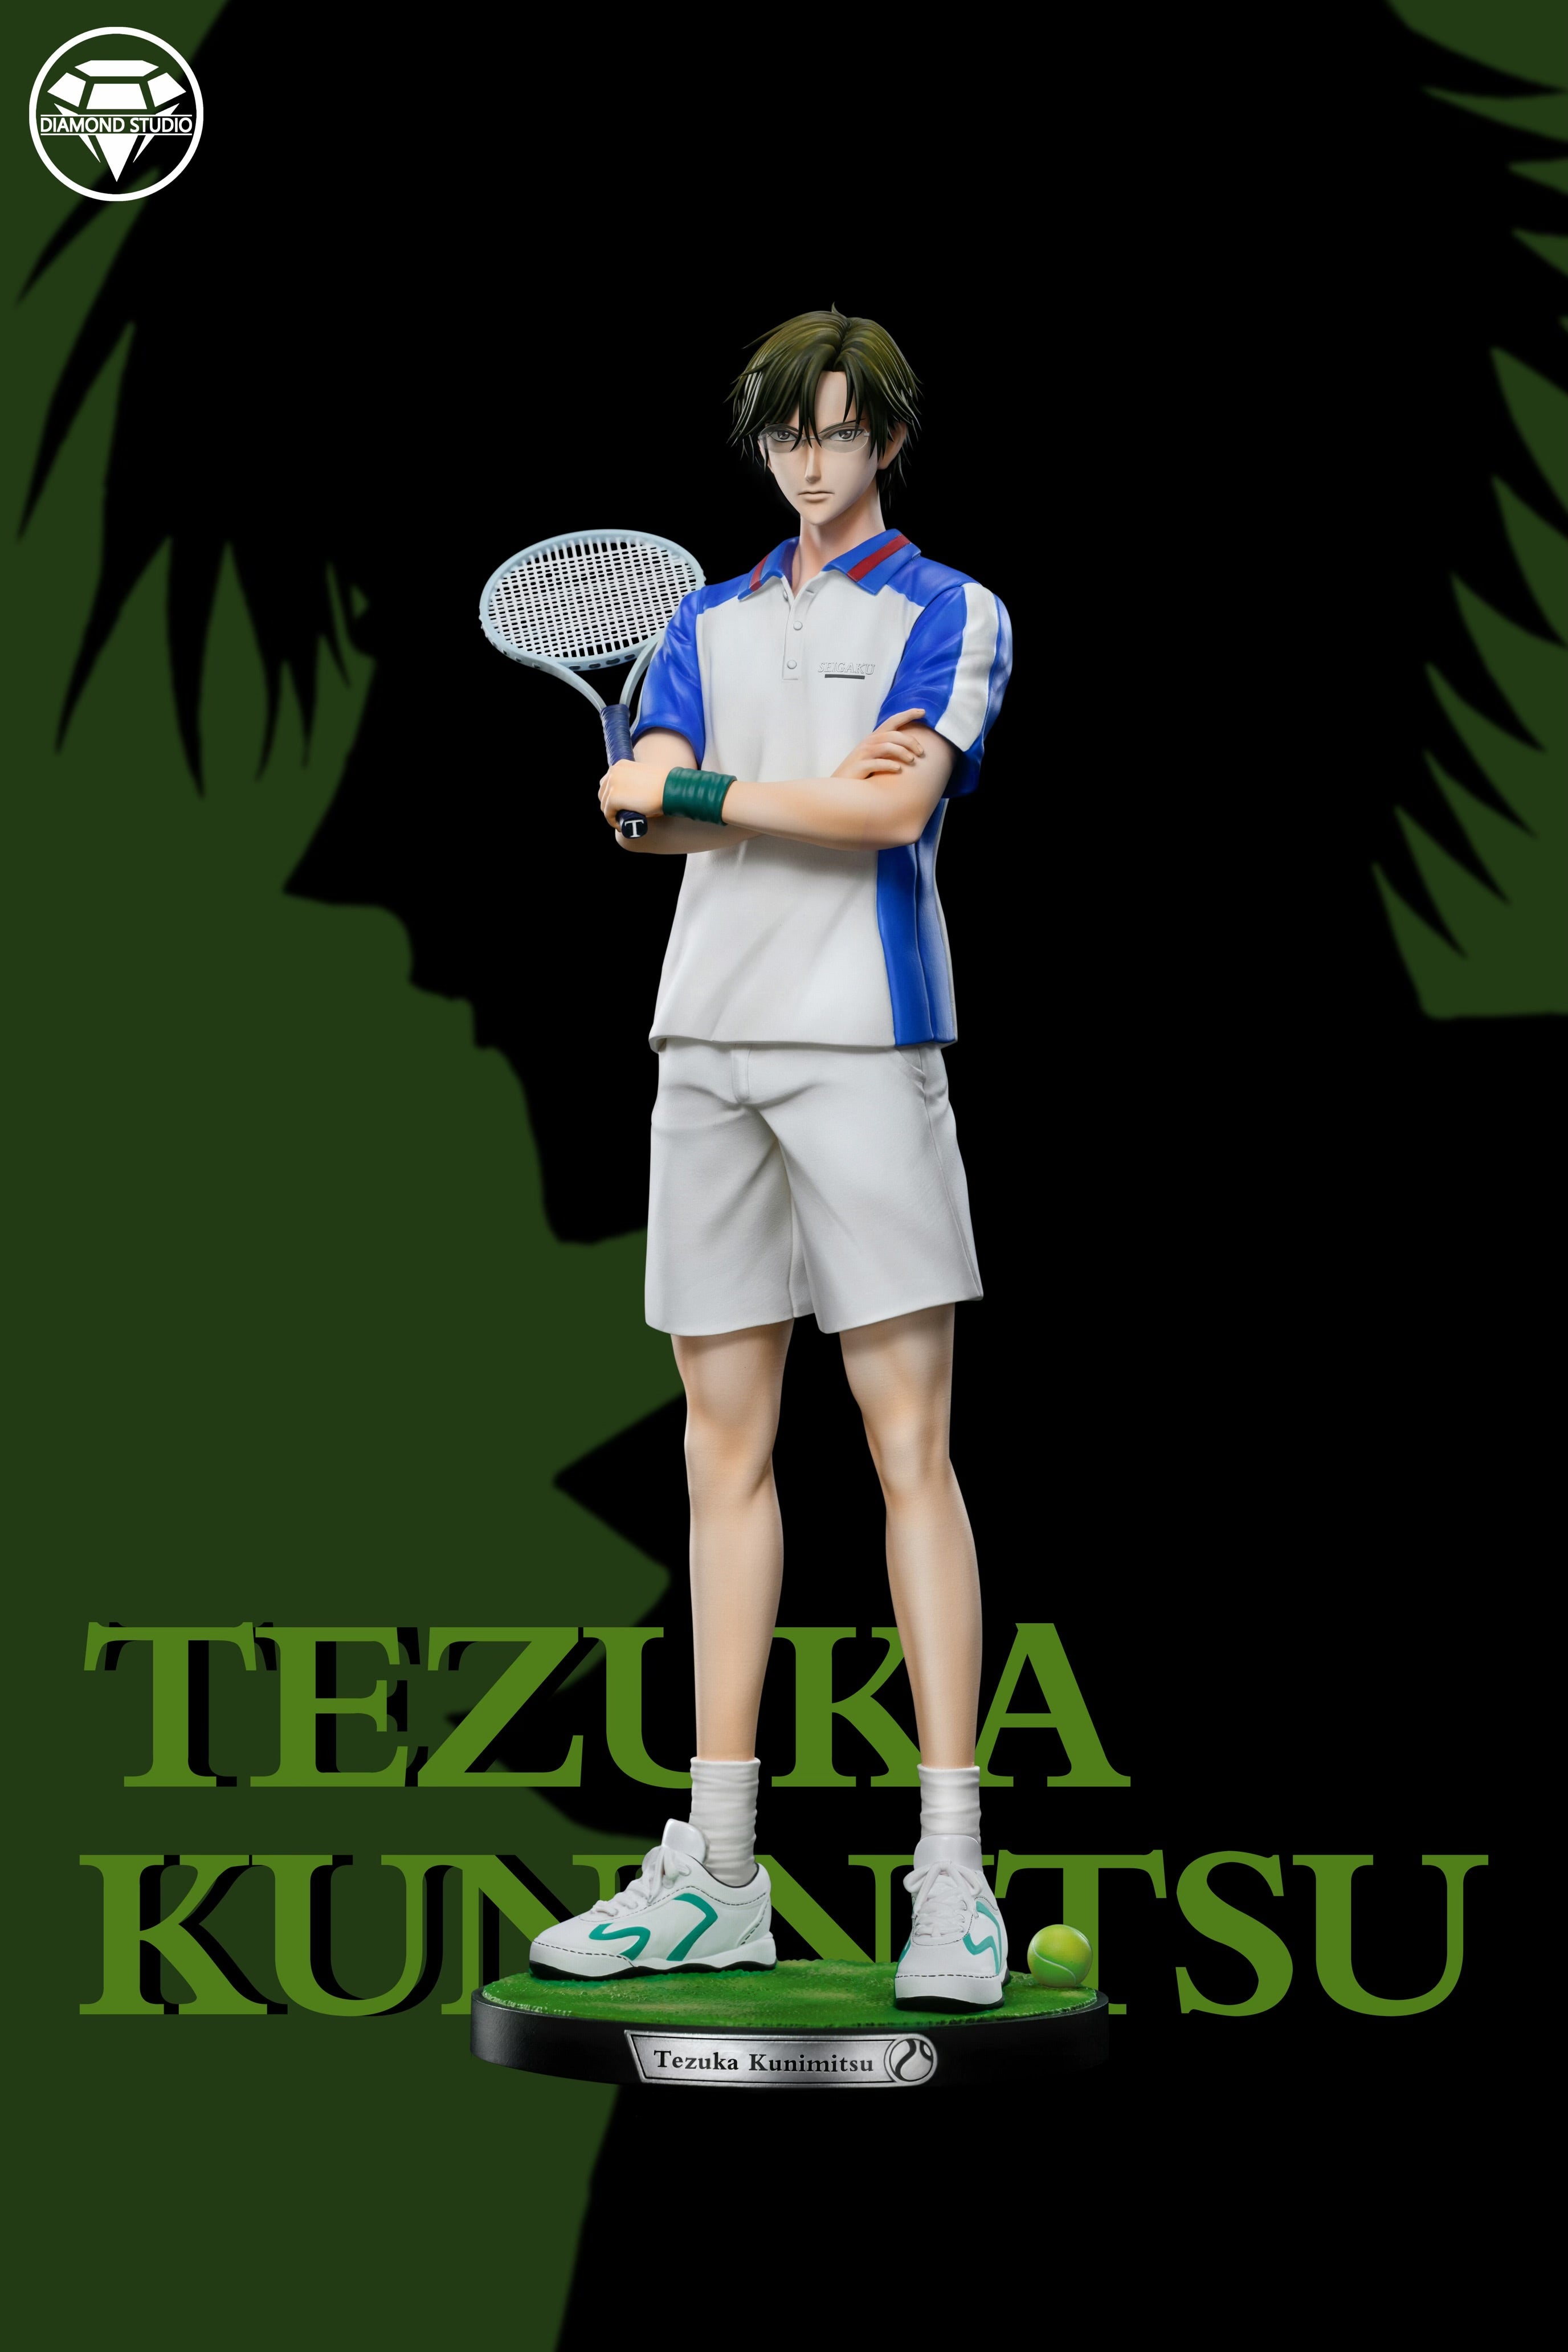 The Prince of Tennis Diamond Studio Syusuke Fuji x Kunimitsu Tezuka Re